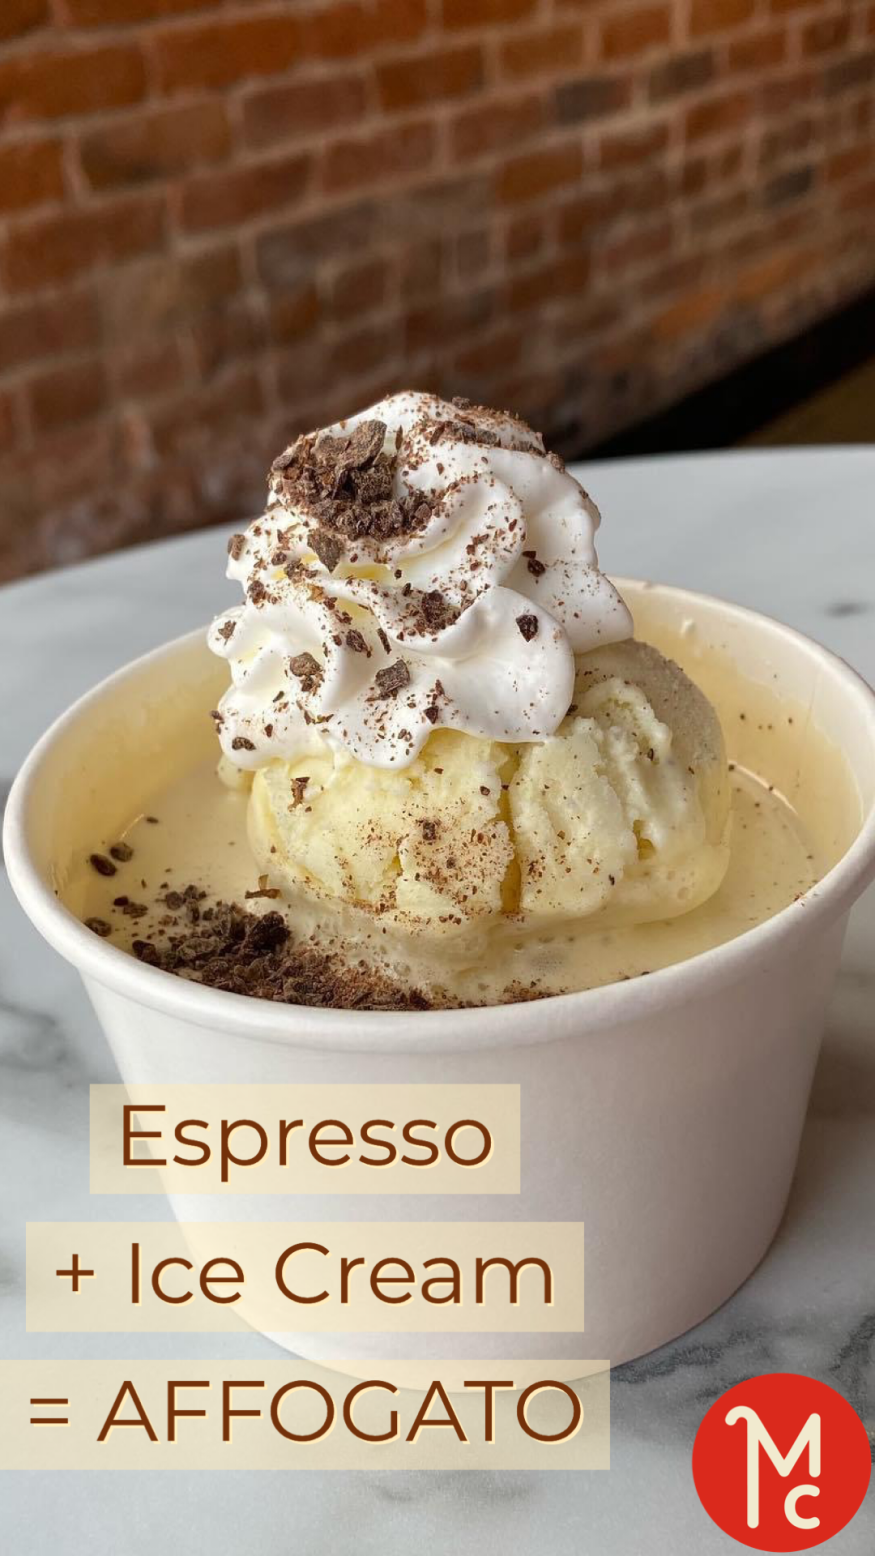 Espresso + Ice Cream = Affogato